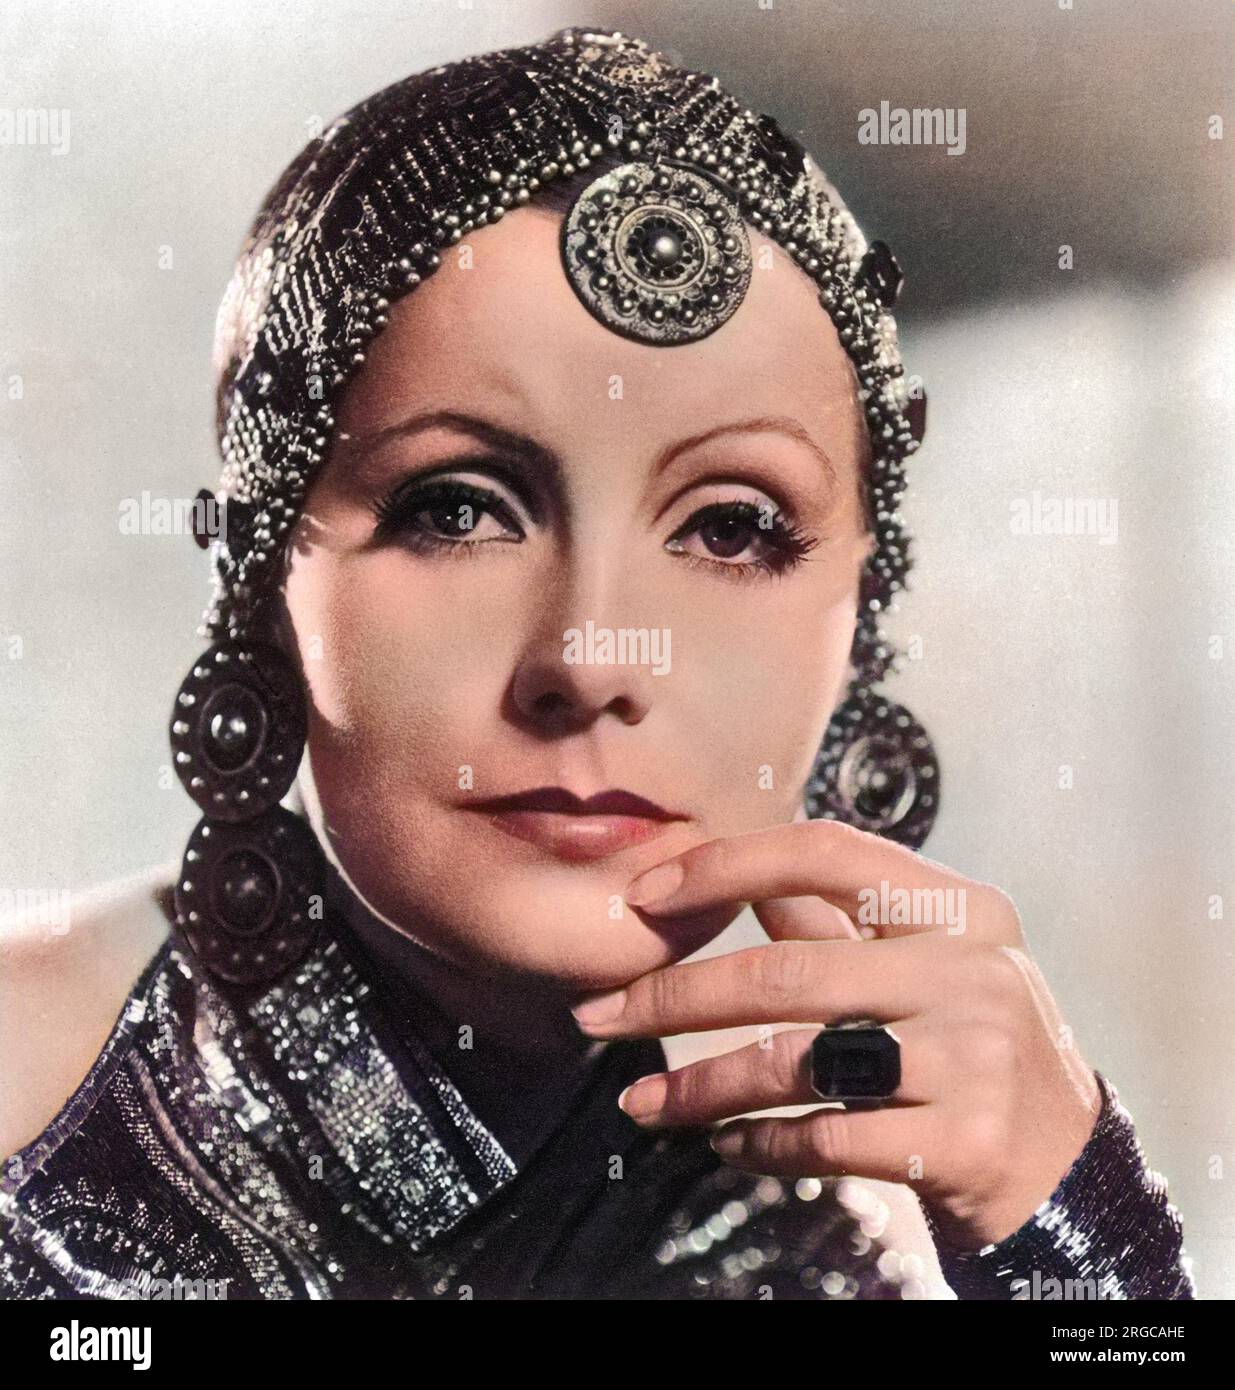 Greta Garbo (1905-1990), als Mata Hari. Greta Garbo wurde in Stockholm geboren und wurde während des Studiums an der Dramatischschule des Königlichen Theaters vom schwedischen Regisseur Mauritz Stiller „besetzt“. Ihr erster Hollywood-Film war "The Temptress" 1926. Zu ihren weiteren Erfolgen zählen „Königin Christie“ (1930), „Anna Karenina“ (1935) und „Ninotschka“ (1939). Sie zog sich 1941 aus dem Film zurück, nachdem sie schlechte Kritiken für "zweigesichtige Frau" erhalten hatte. Sie lebte den Rest ihres Lebens als Einsiedlerin in New York. Stockfoto